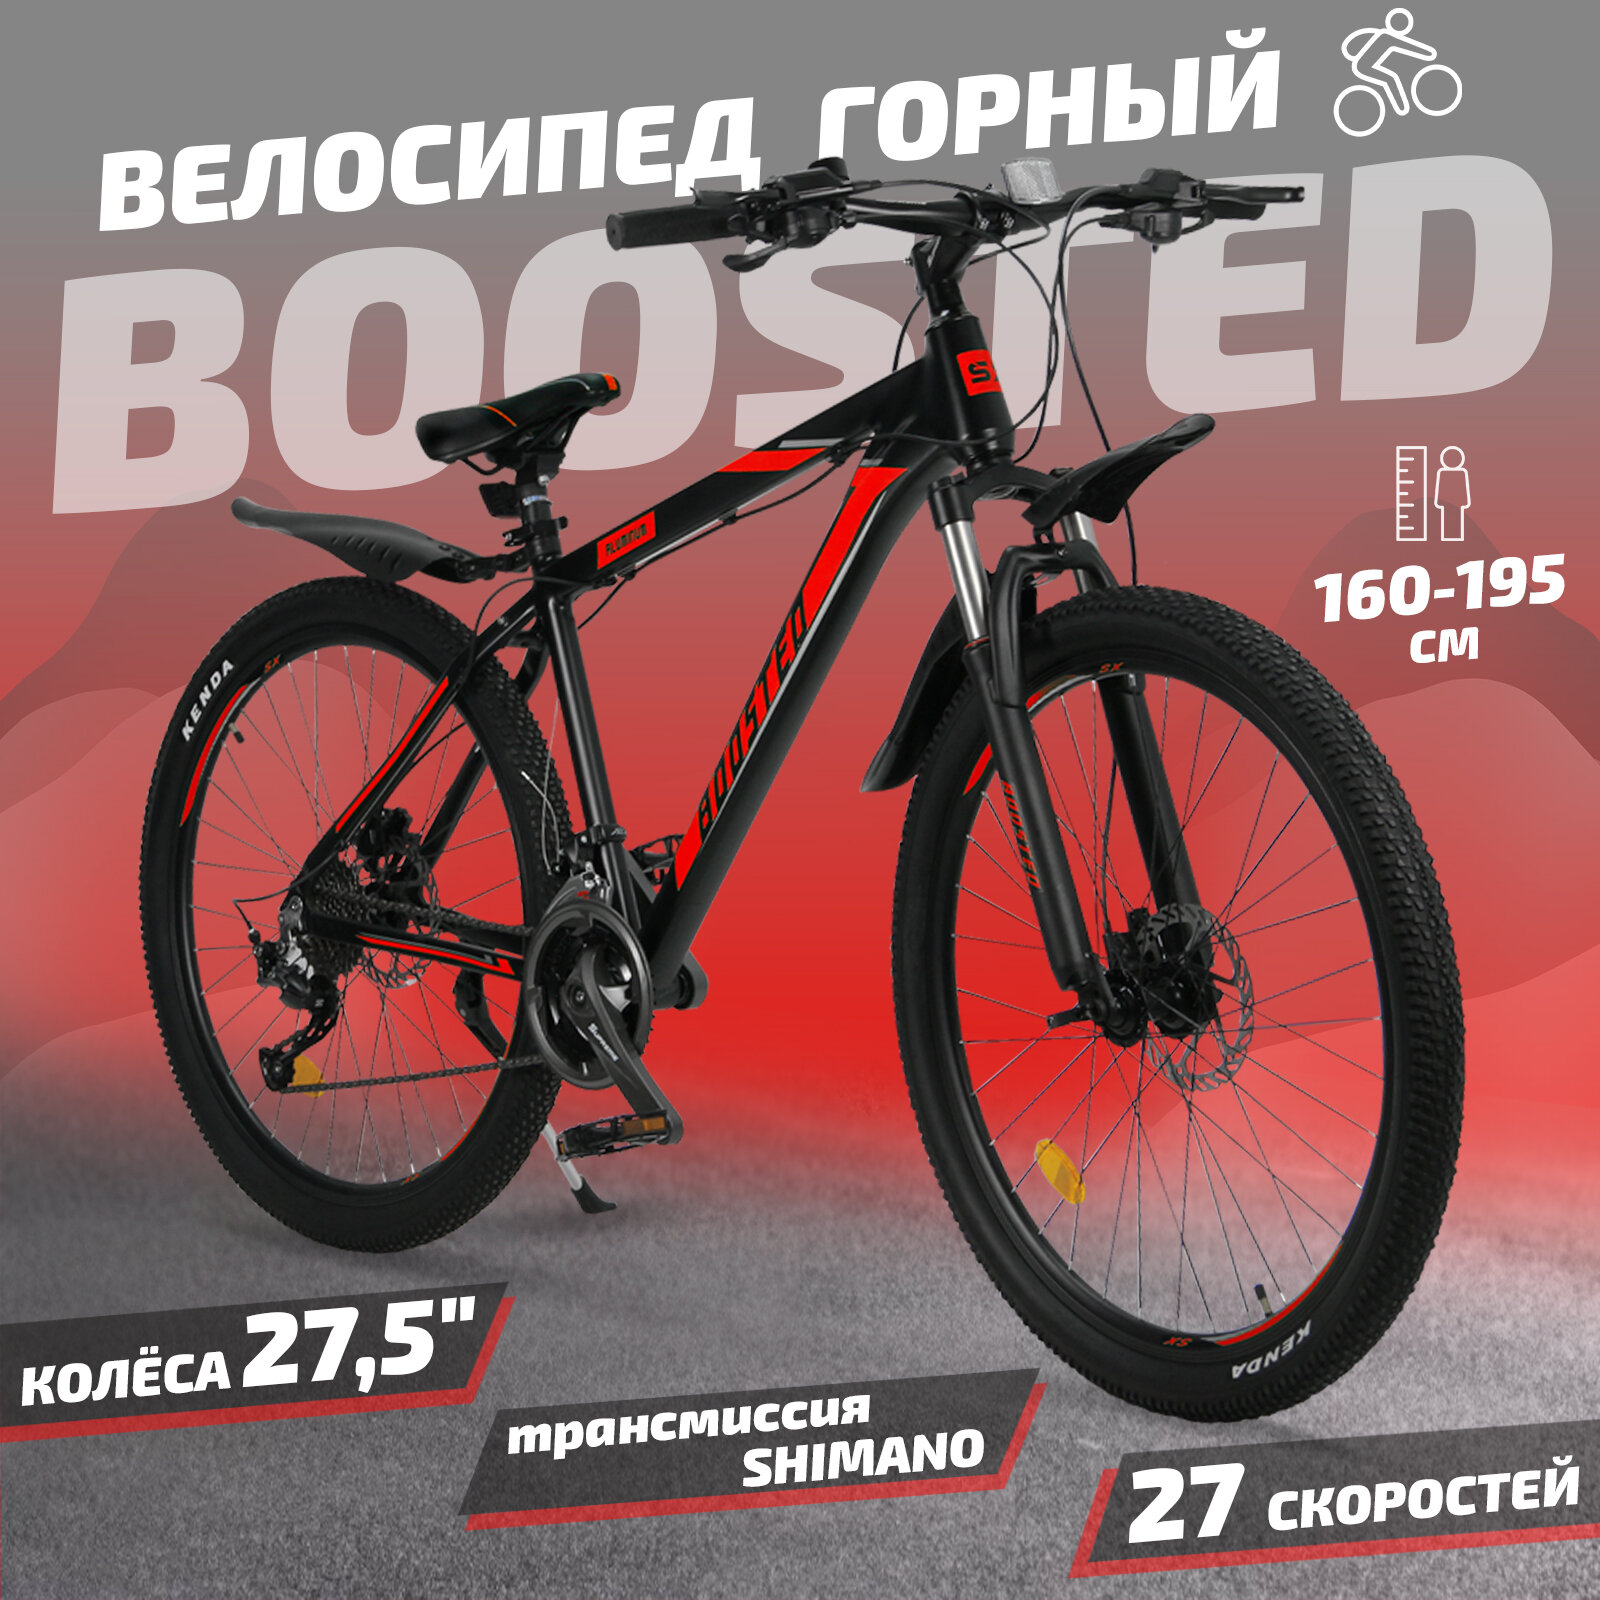 Велосипед скоростной 27,5 "Boosted" красный, 27 скоростей(Shimano), алюминиевая рама, тормаза гидравлические дисковые